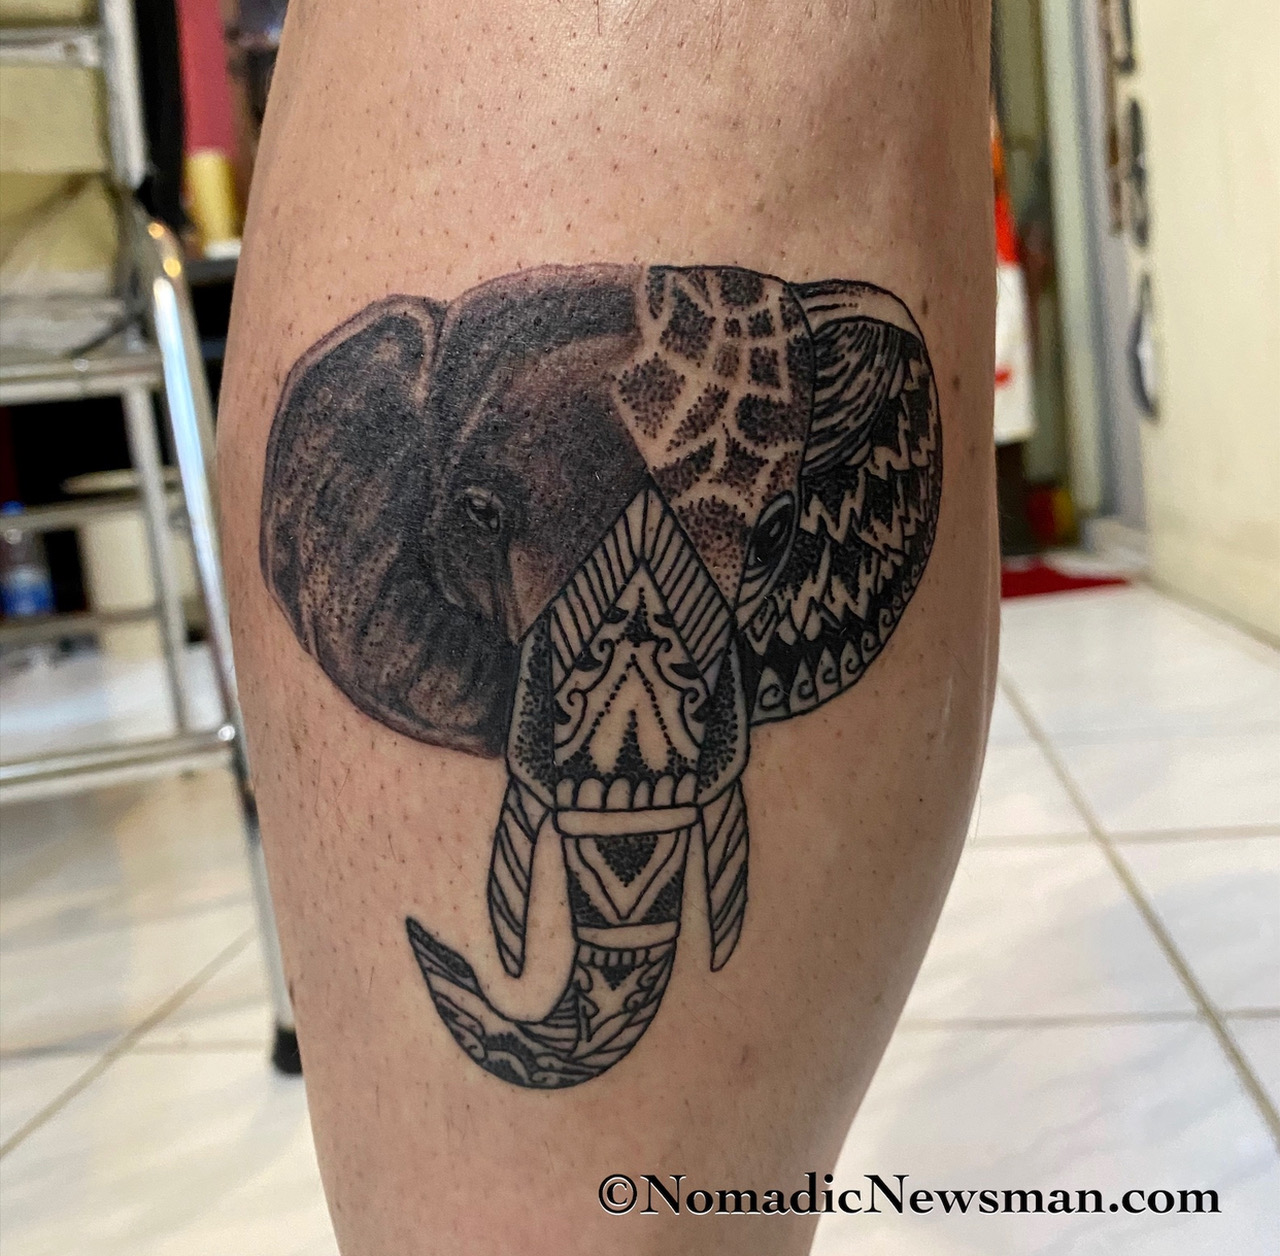 Joey got elephant ink - an inspiring tattoo